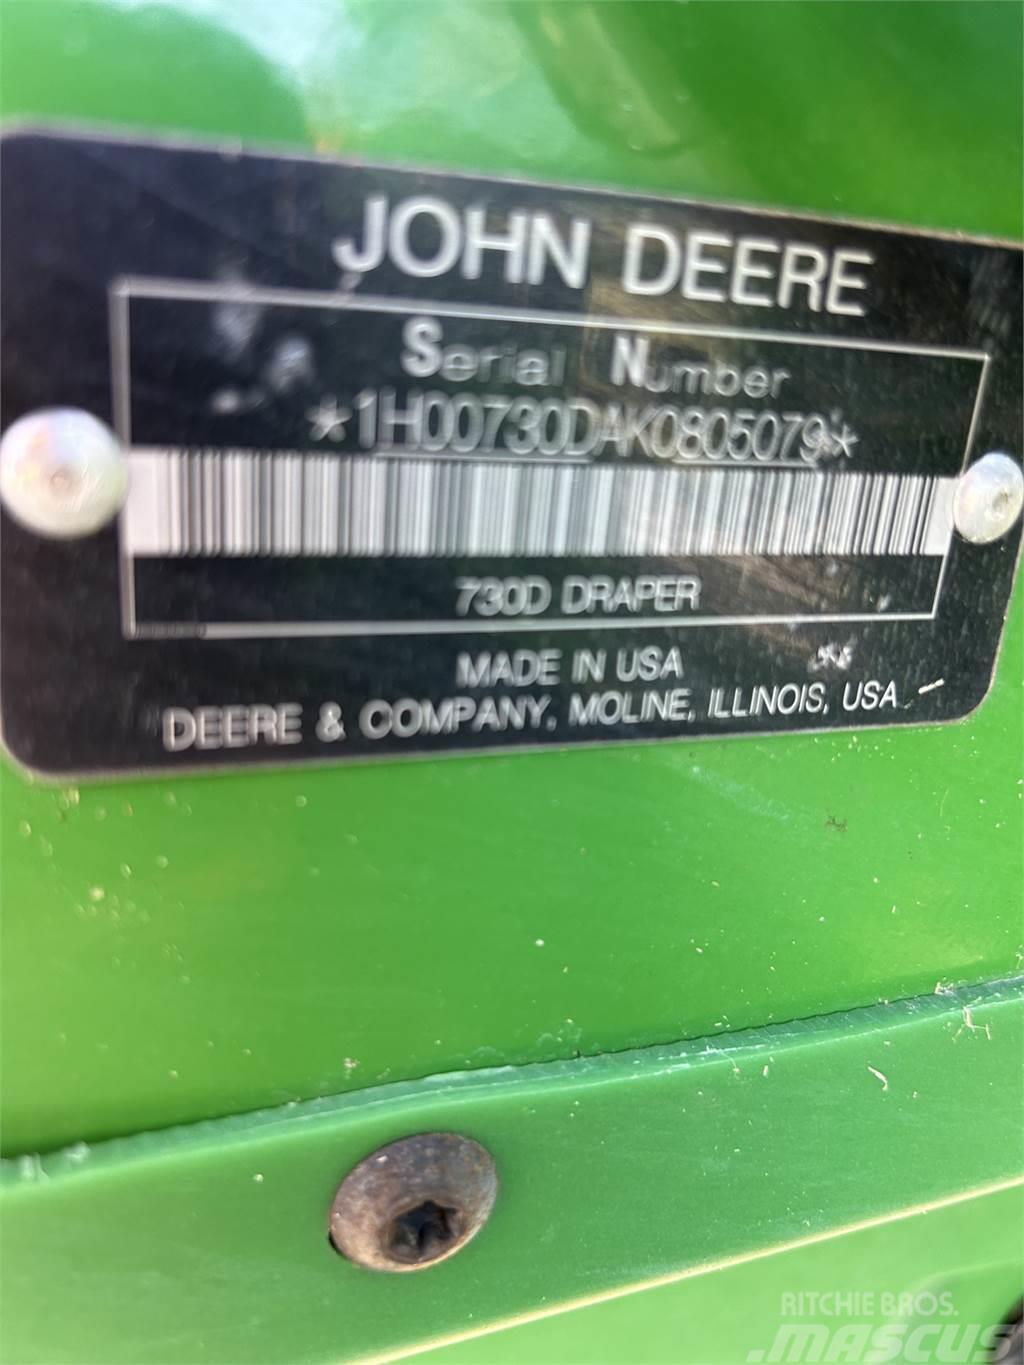 John Deere 730D Εξαρτήματα θεριζοαλωνιστικών μηχανών